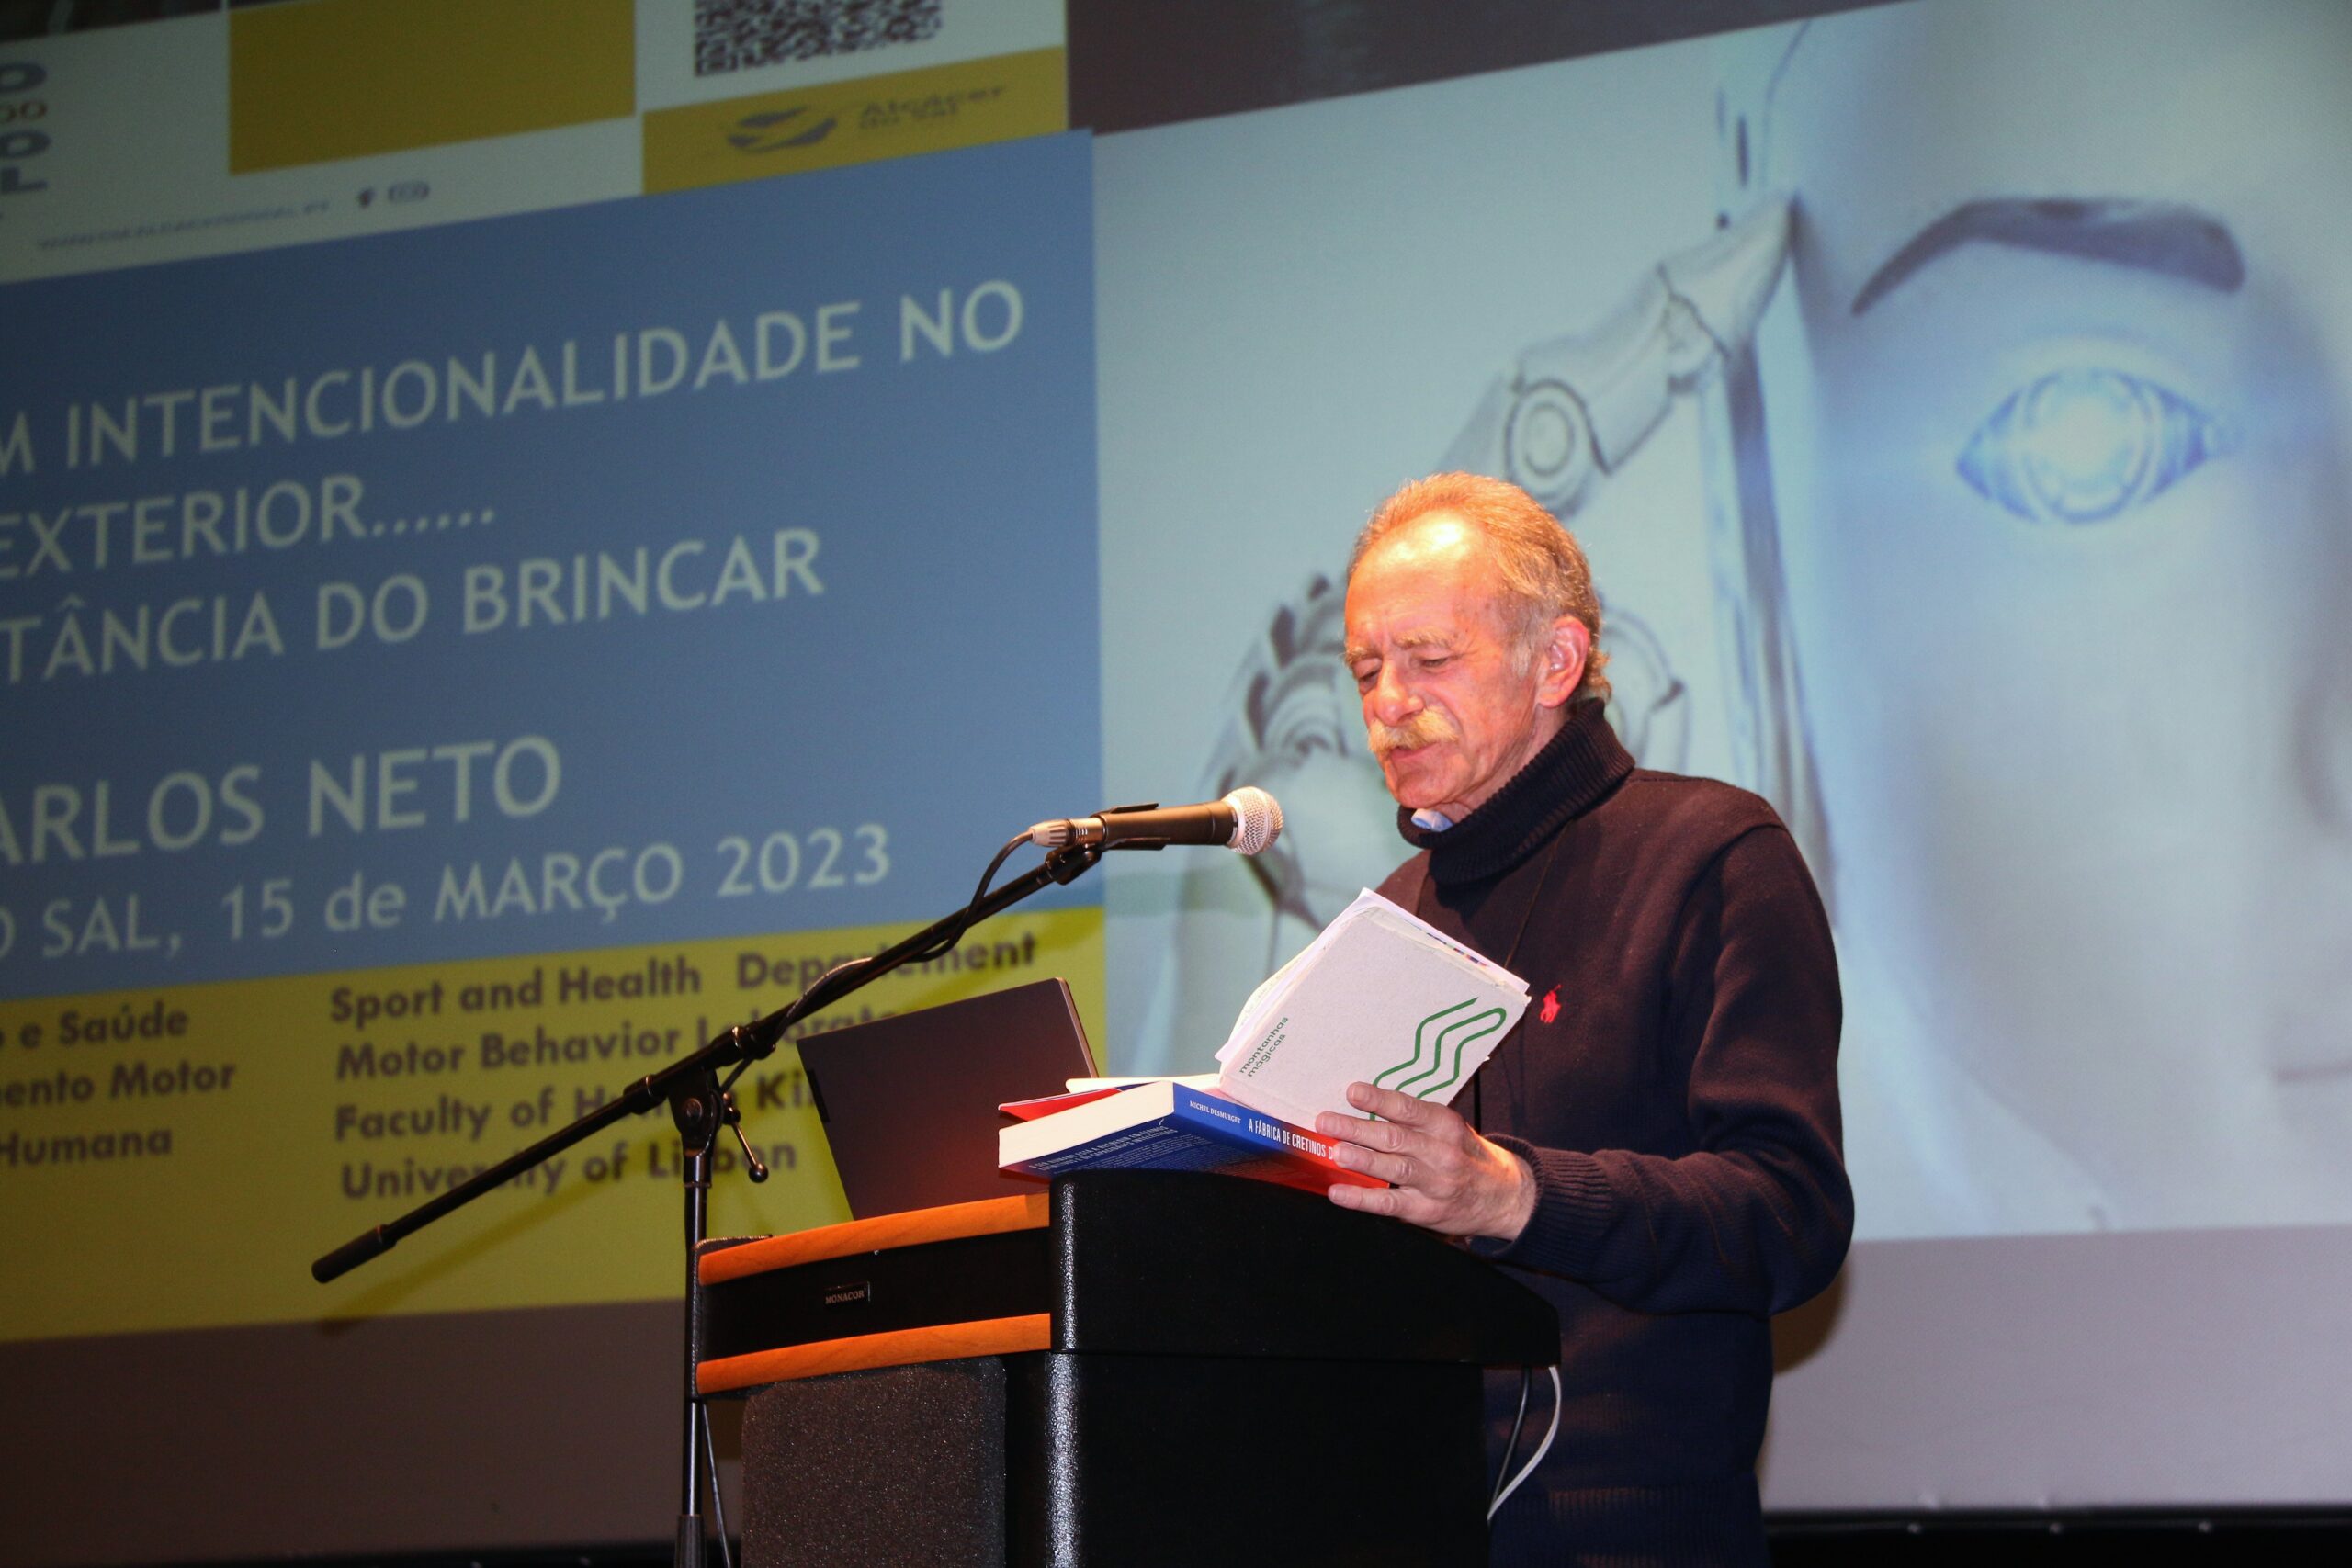 “Importância do Brincar” foi ontem abordada em palestra do Professor Carlos Neto no Auditório Municipal